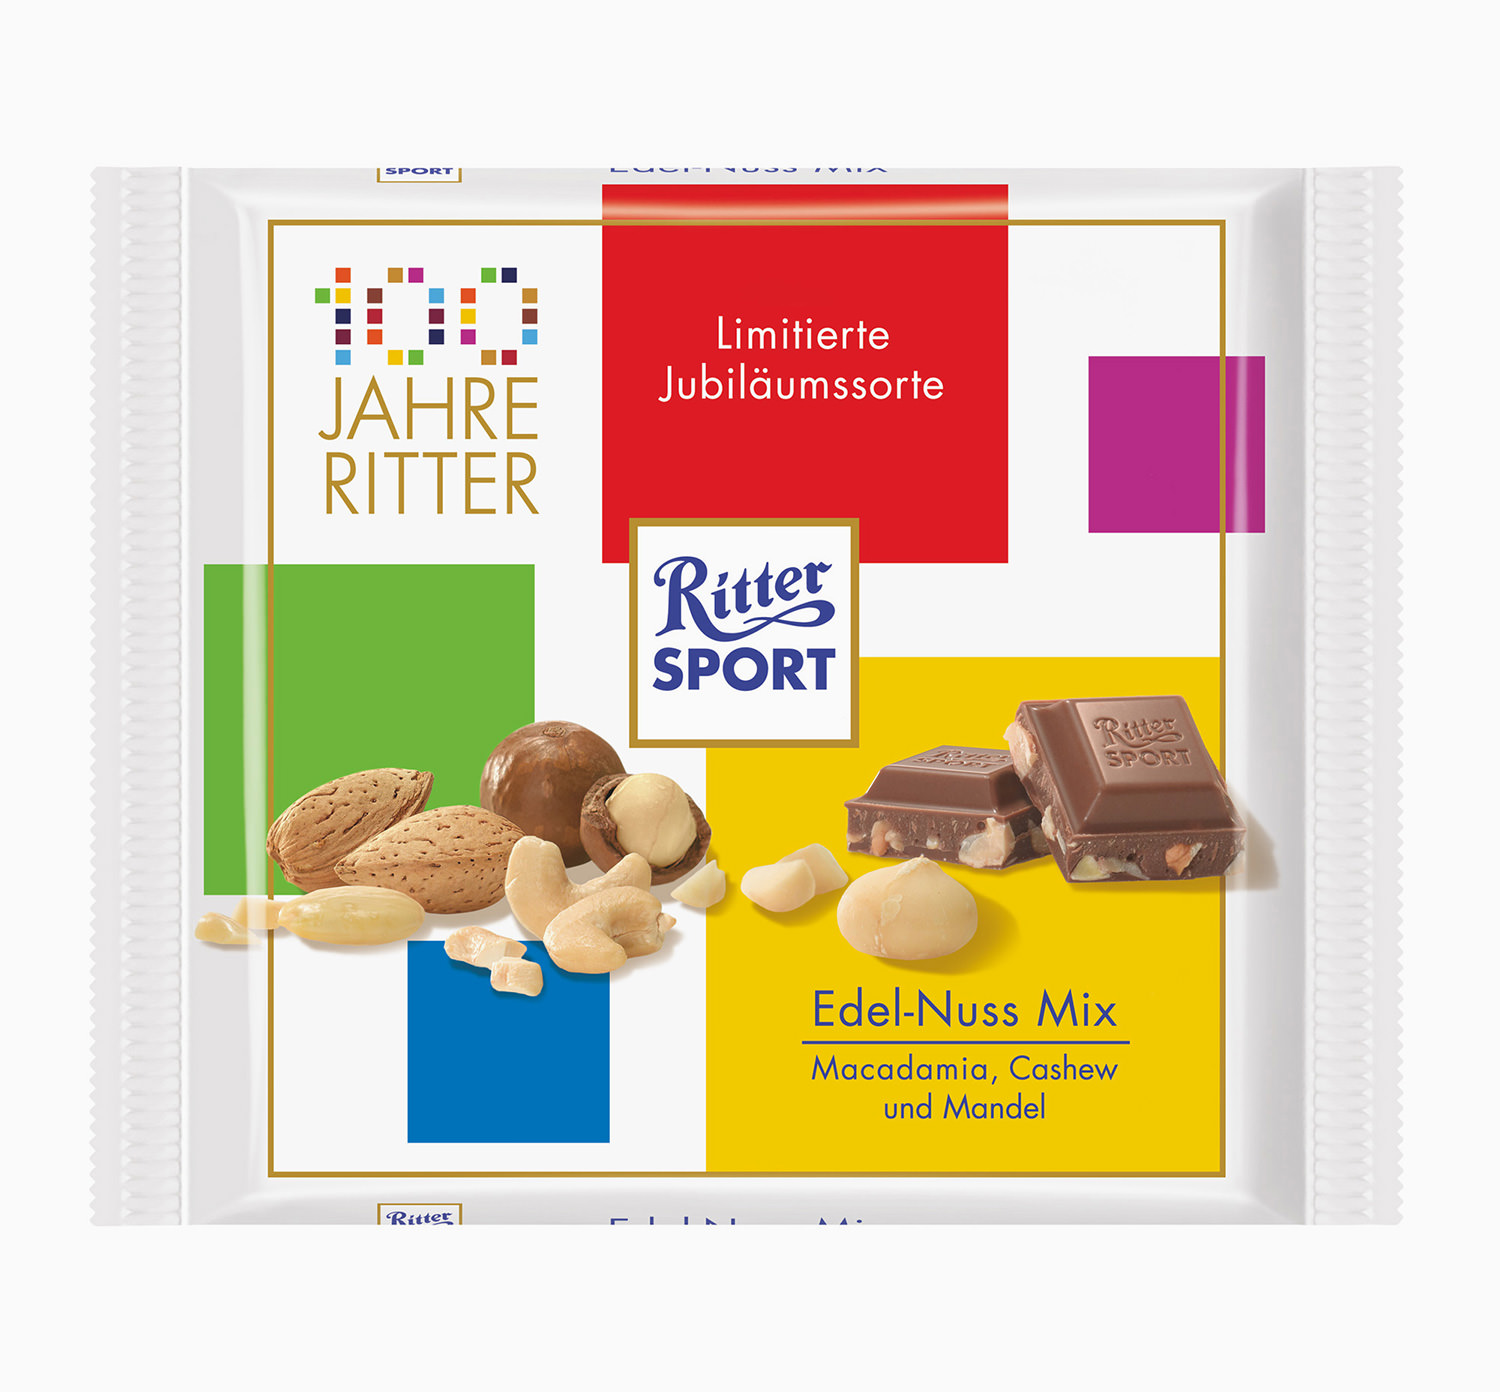 Ritter Sport, Schokolade